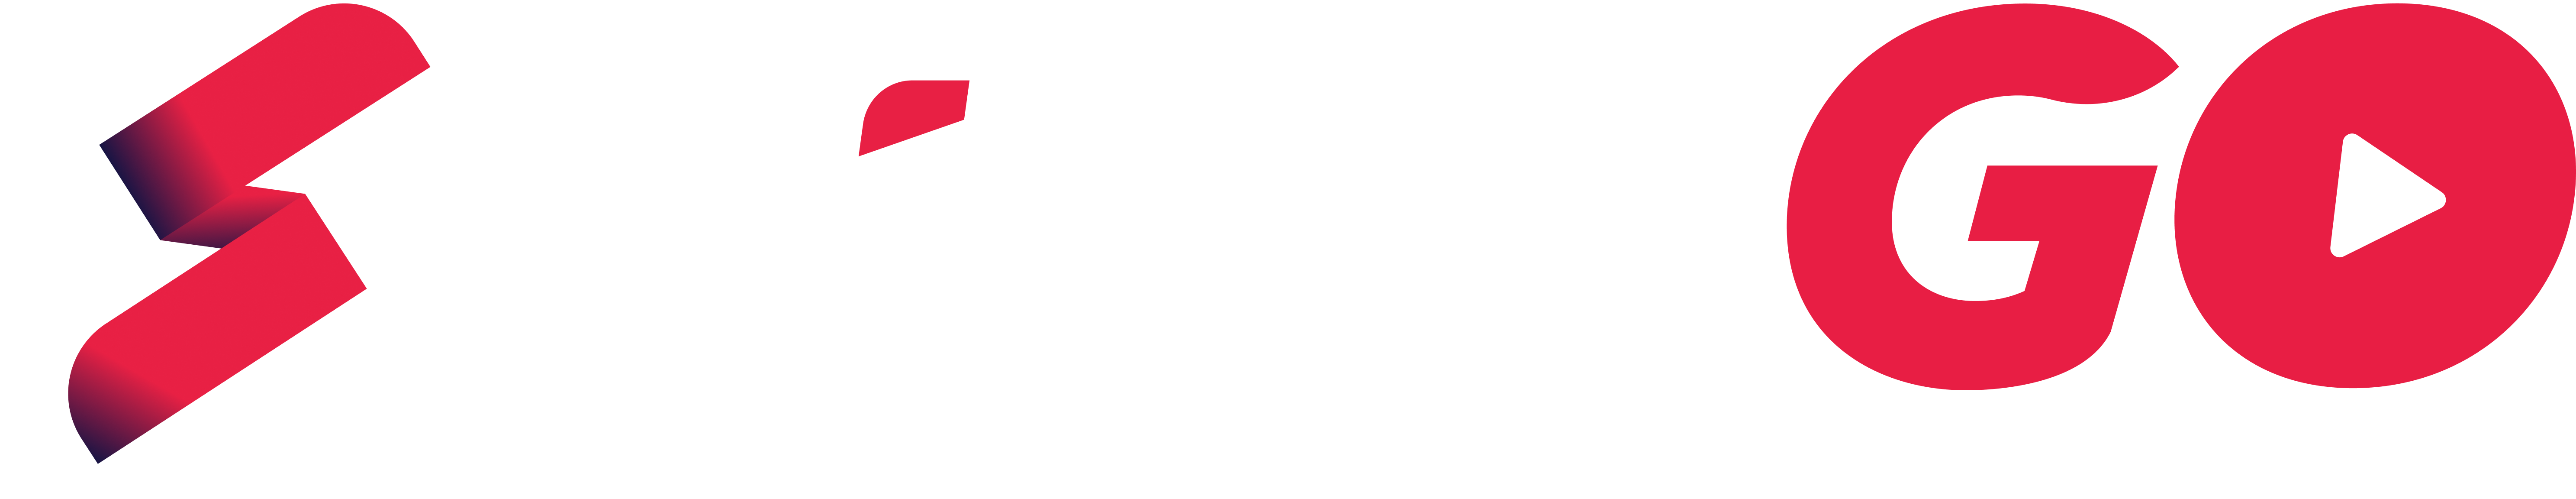 siprogo_logo